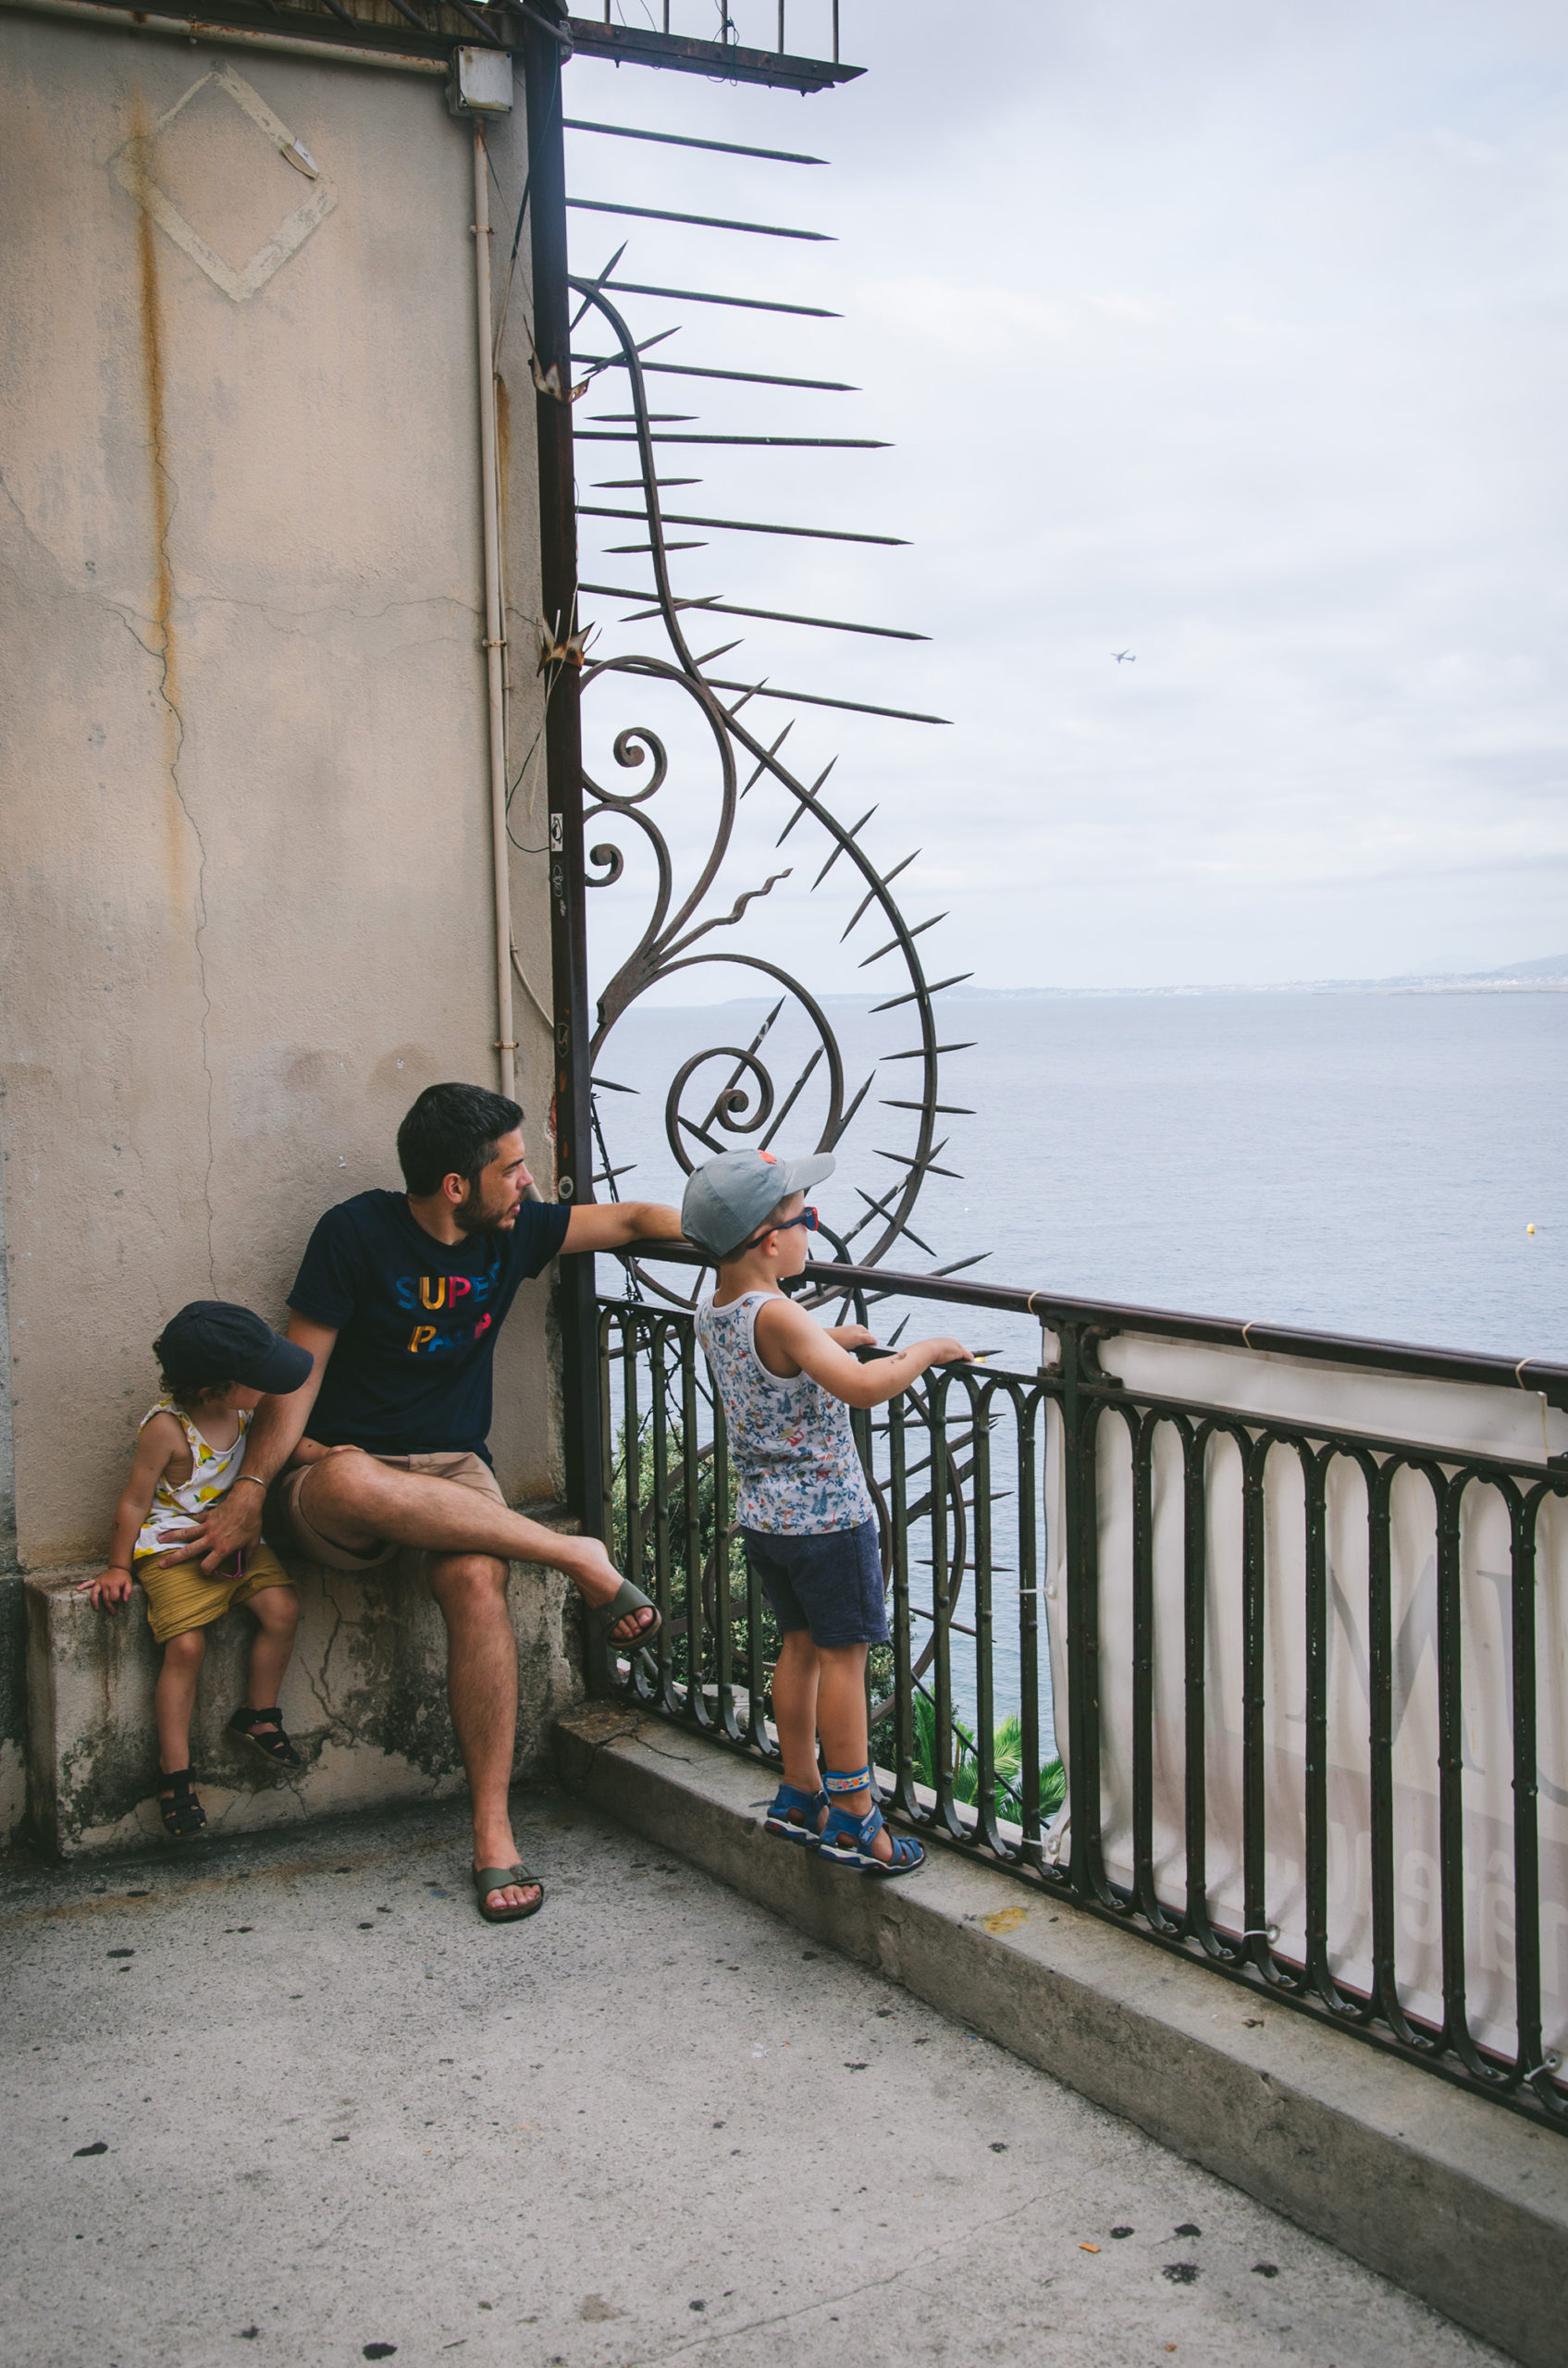 5 choses à faire sans voiture dans la Riviera autour de Nice